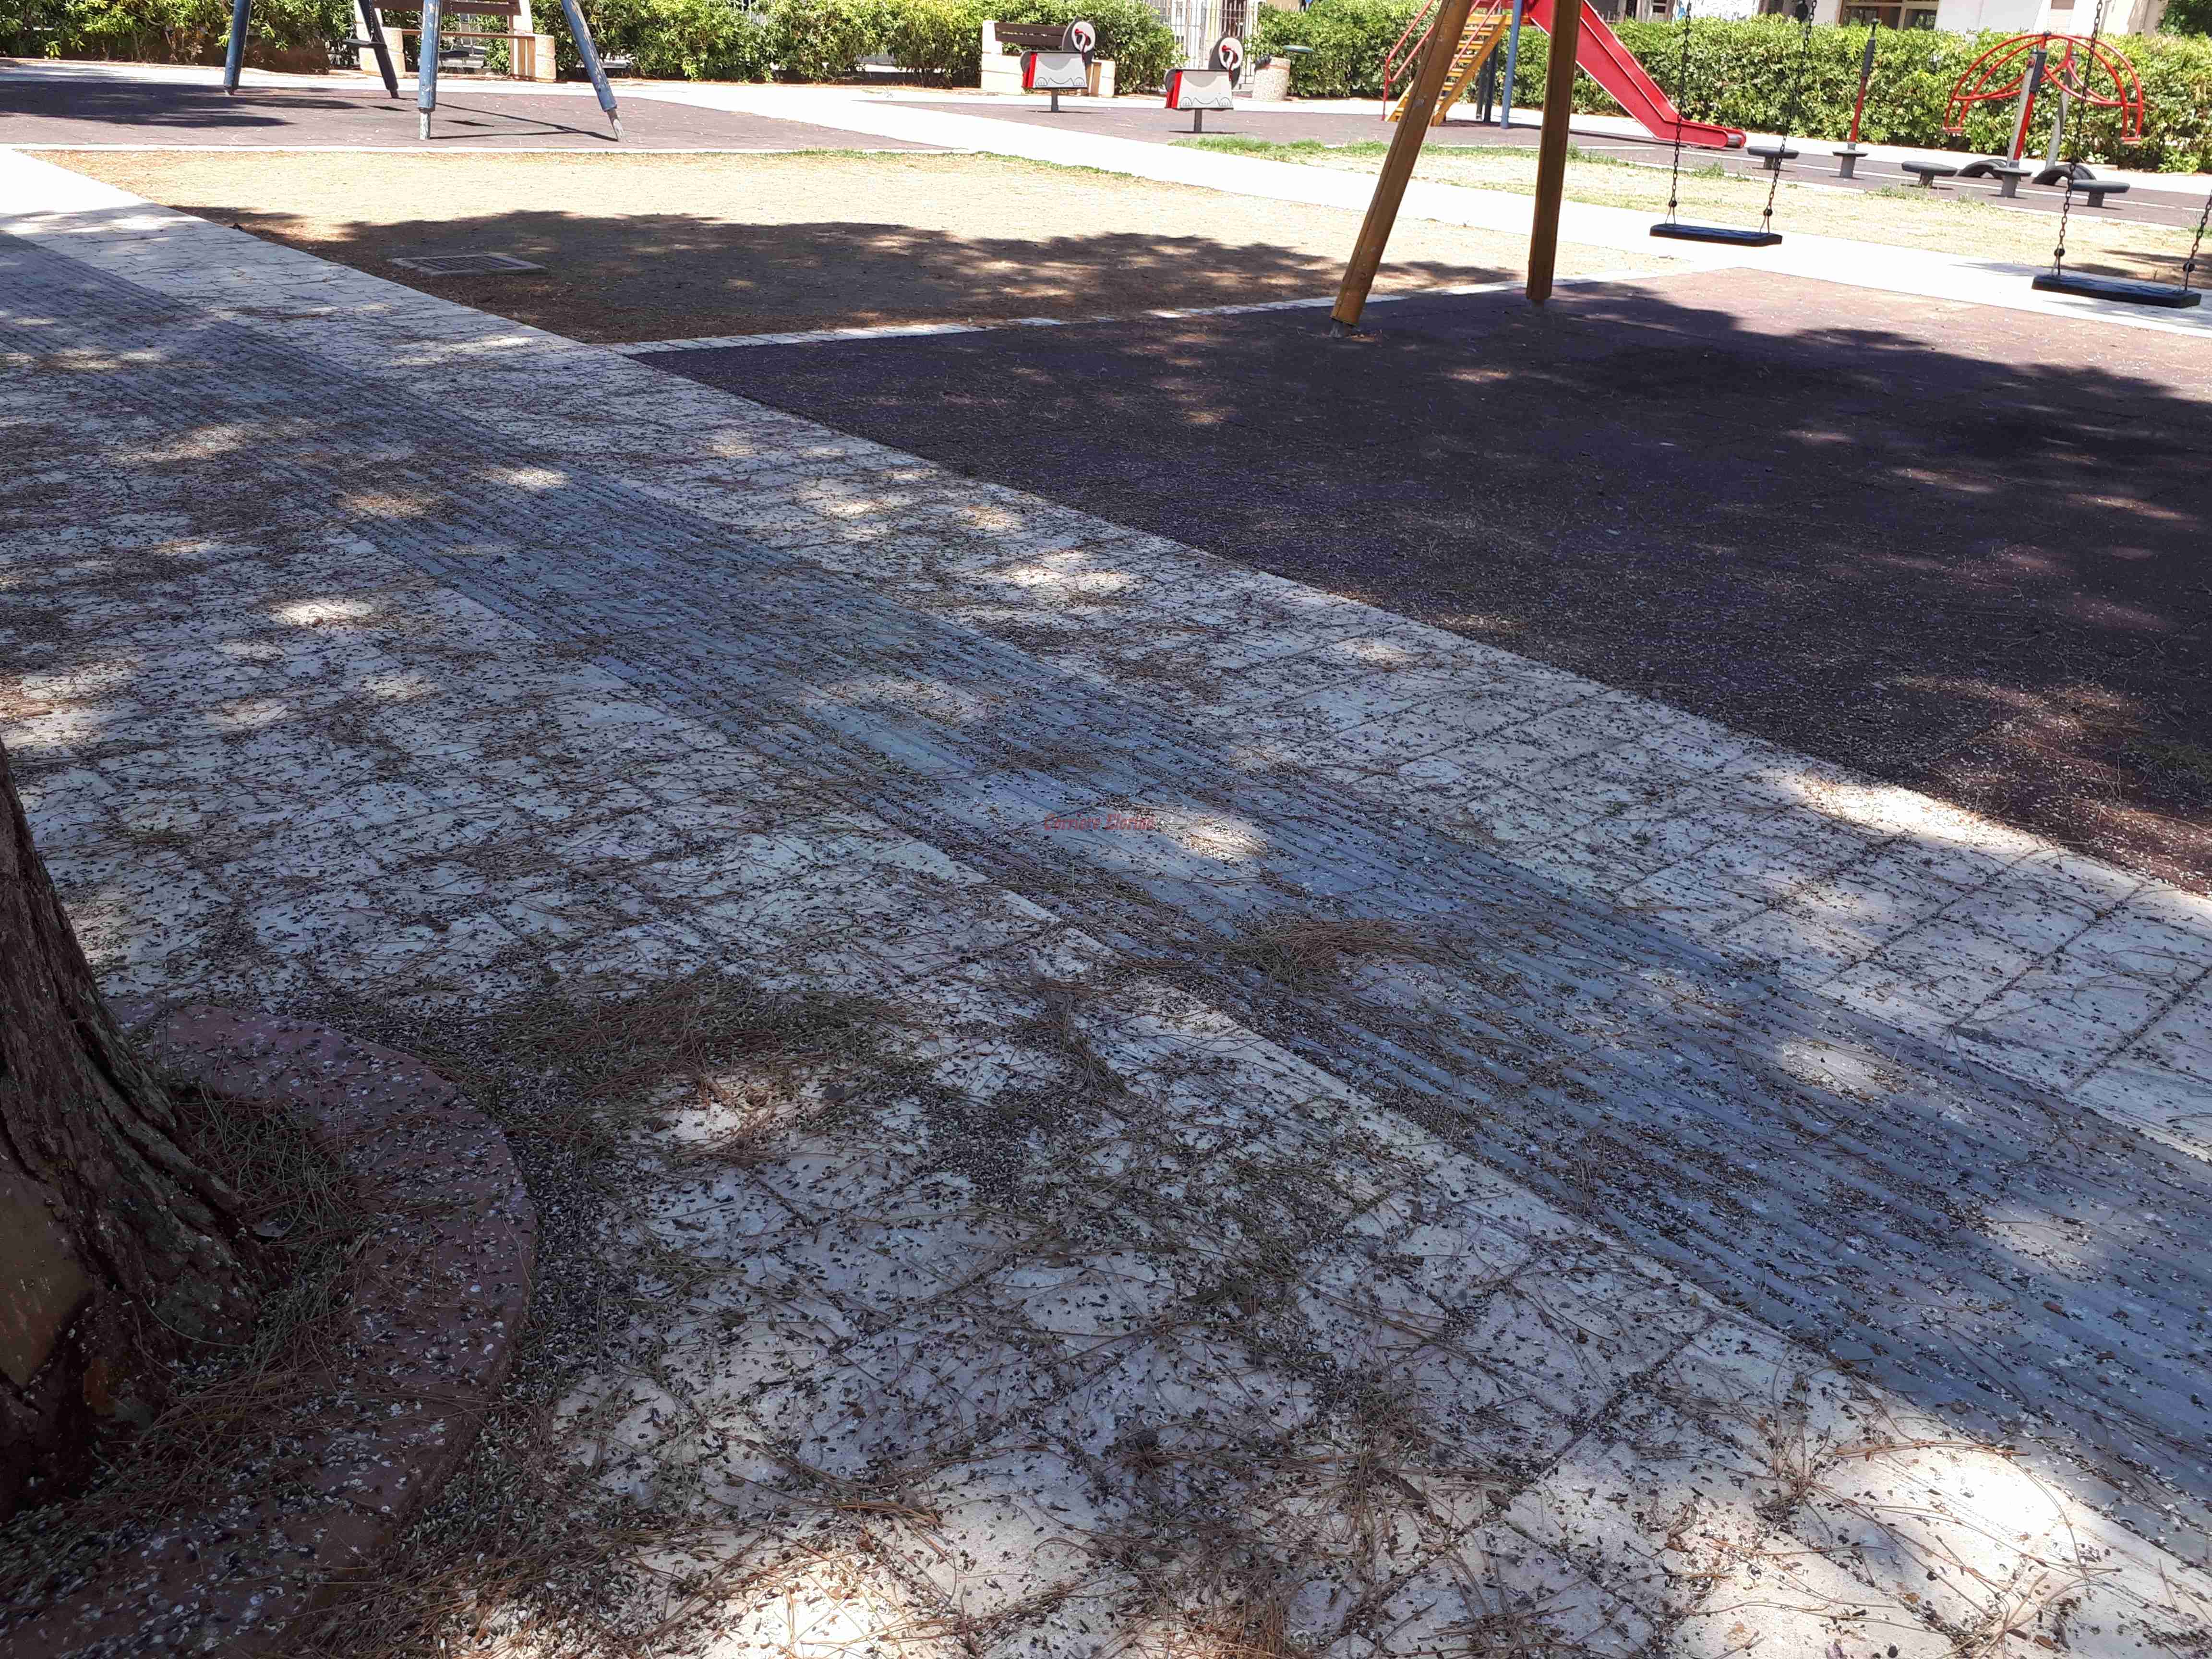 Piazza XXIV Maggio, parchi giochi pericolosi per i bambini, invasi da escrementi di piccioni